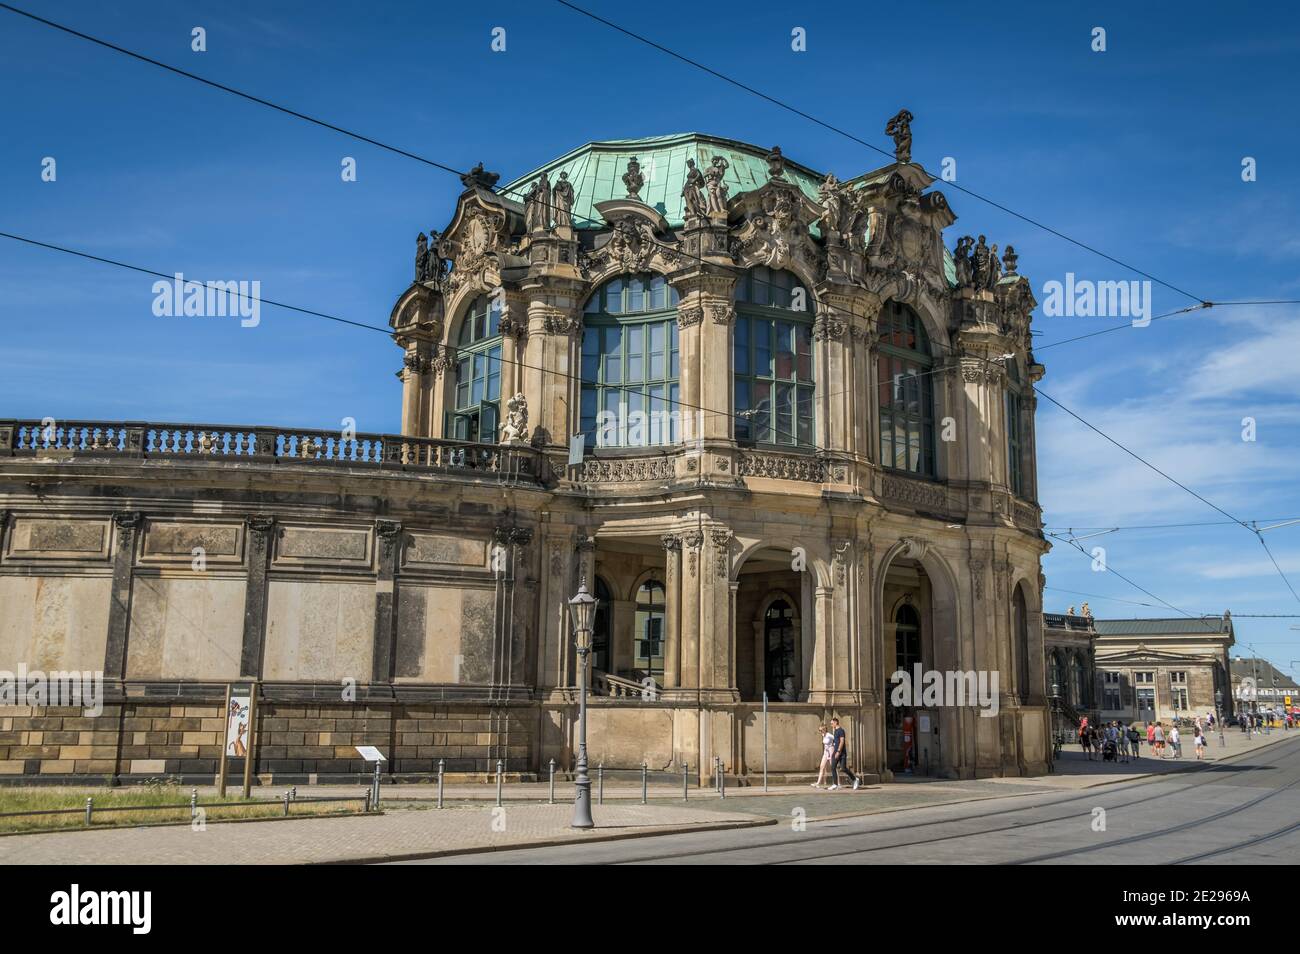 Glockenspielpavillon, Zwinger, Dresden, Sachsen, Deutschland Stock Photo